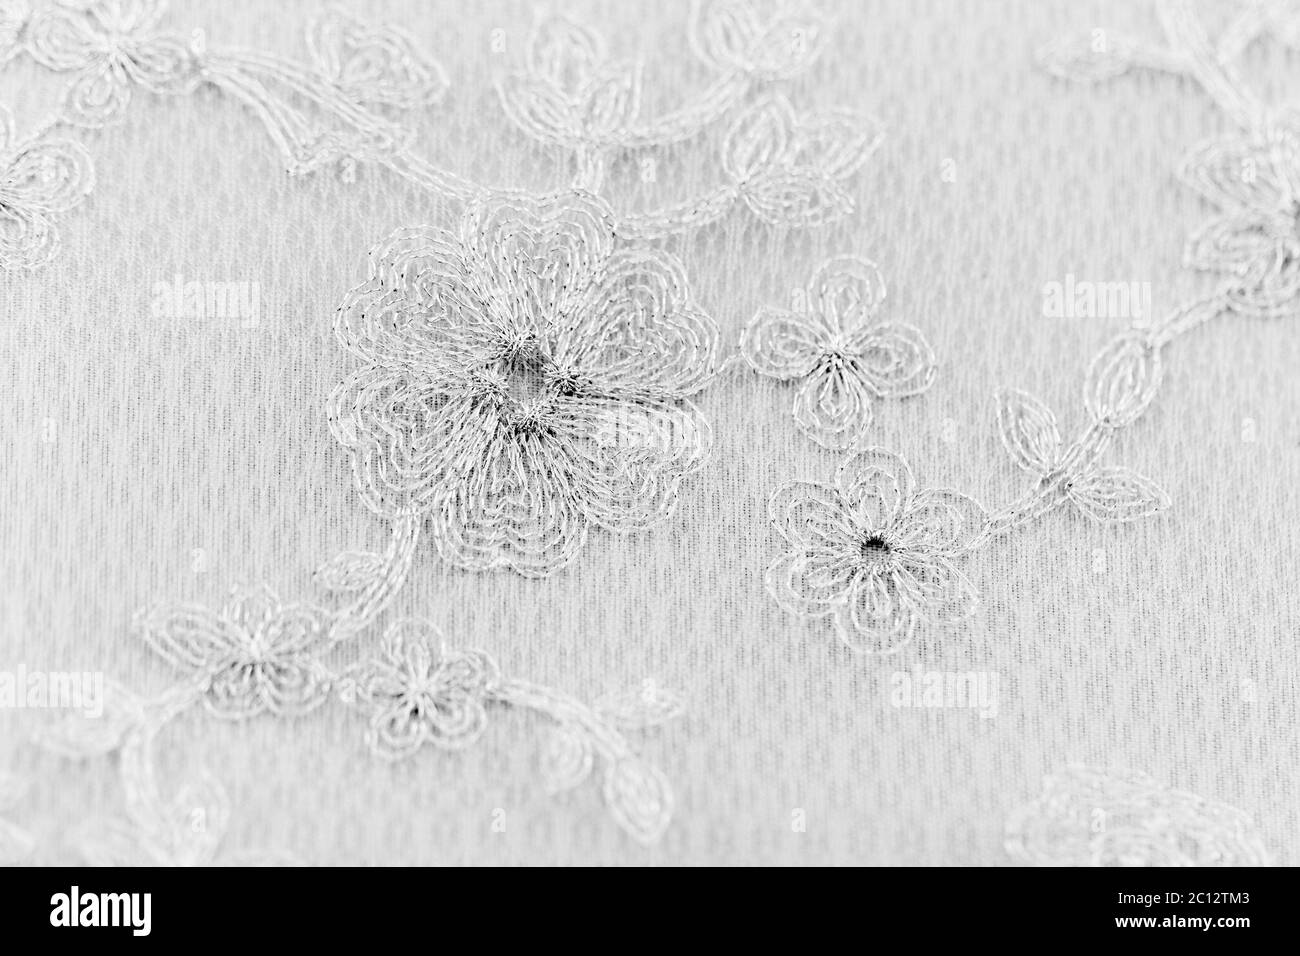 Beautiful lace with flower pattern - macro photo Stock Photo